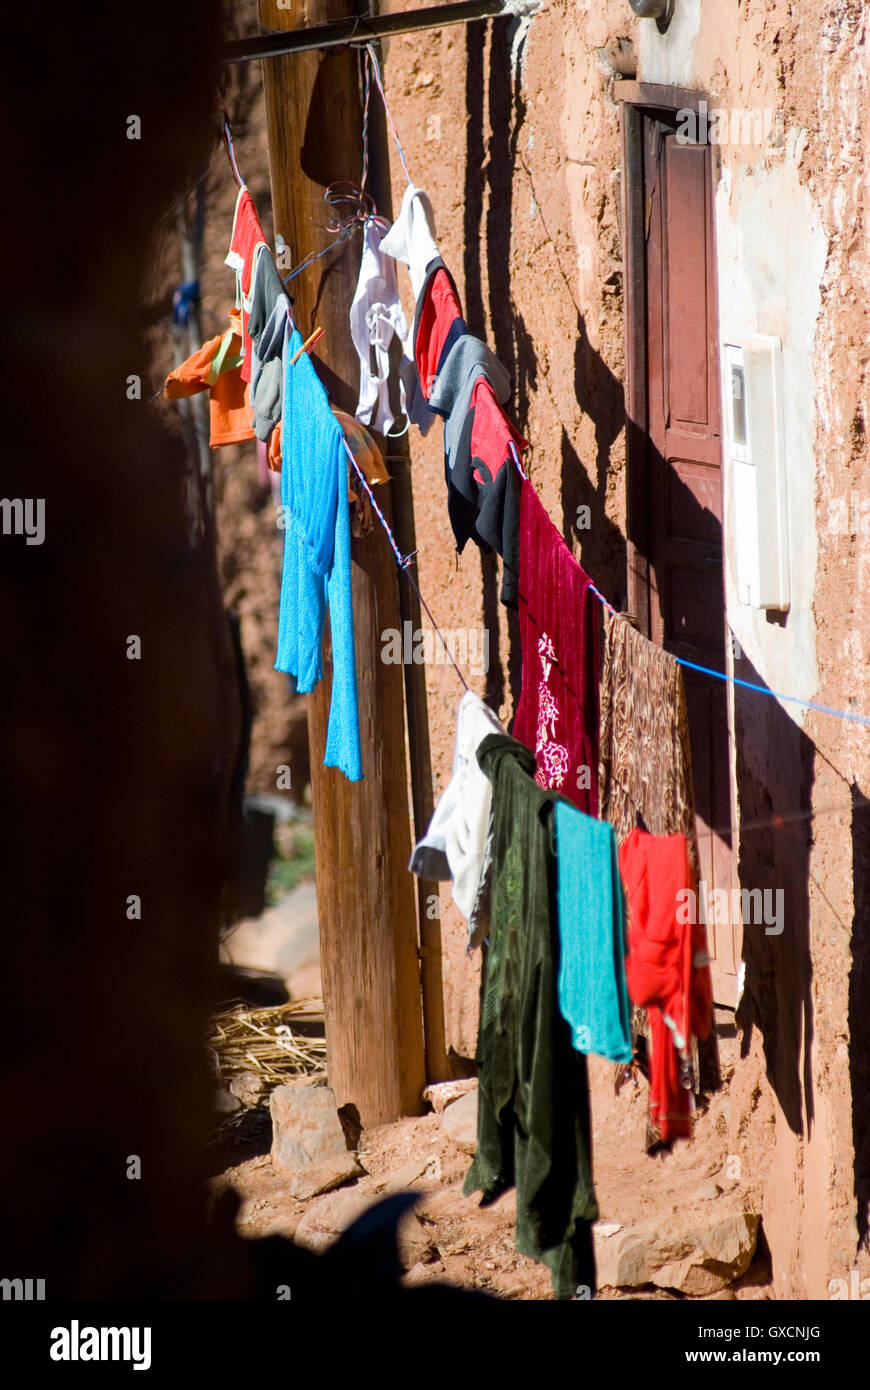 Kleidung auf eine Wäscheleine in einem Land der Dritten Welt Stockfoto